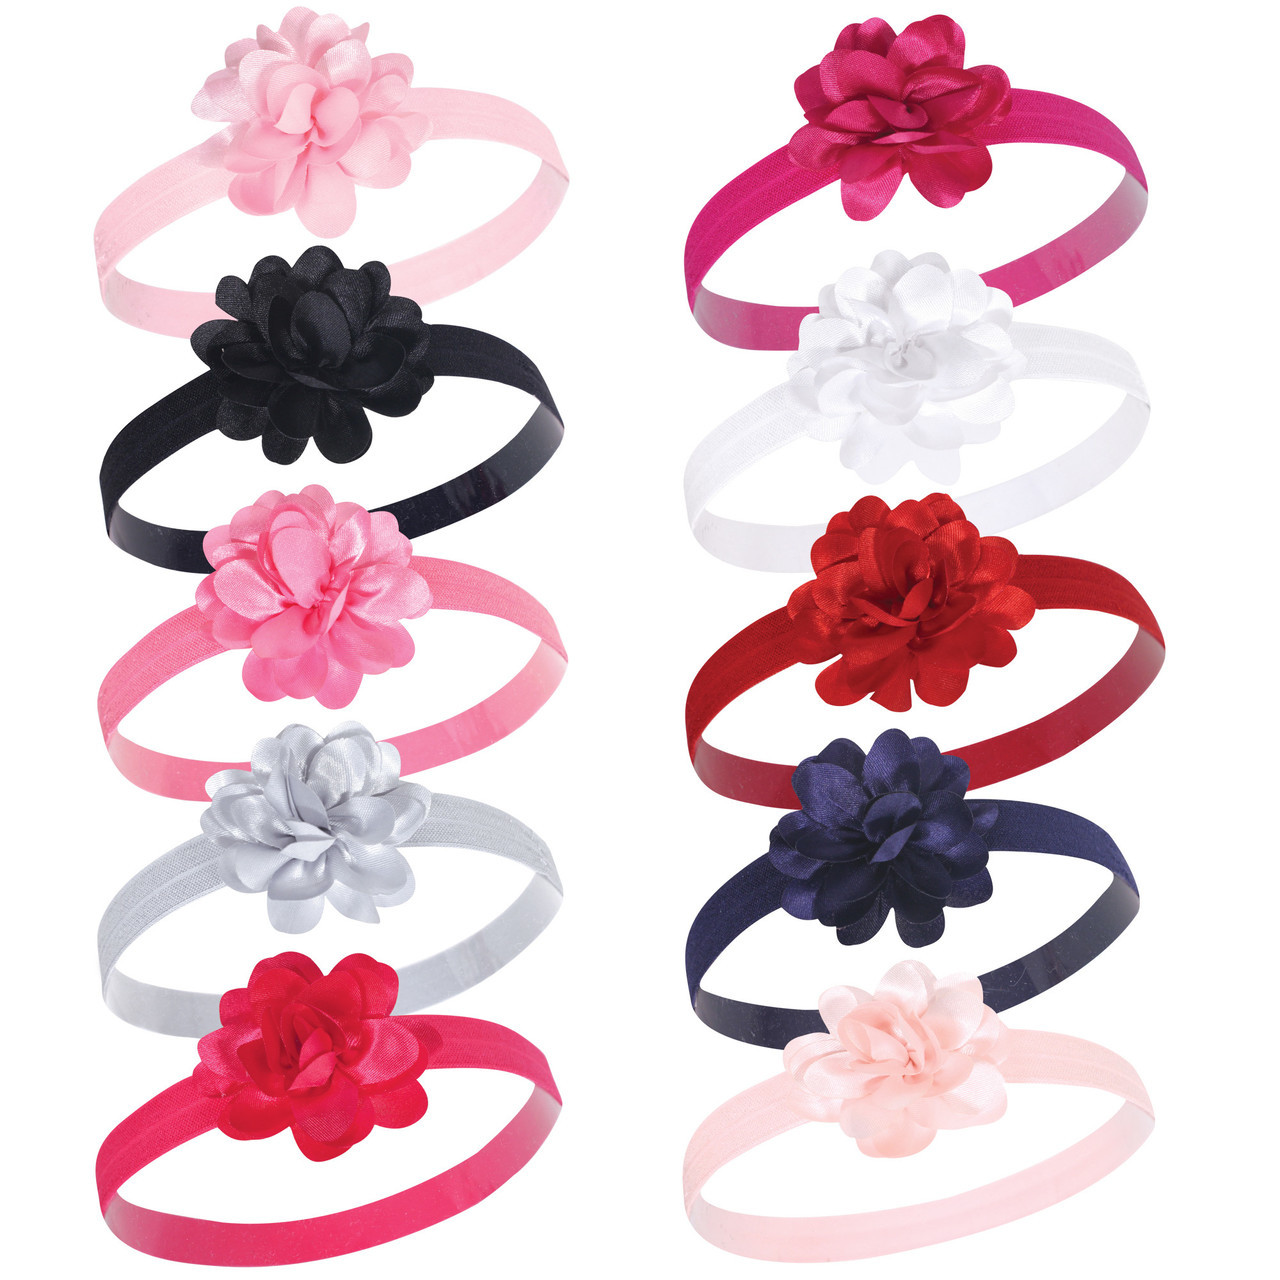 10 Pack Satin Pink/Black Hudson Baby Girl Flower Headbands 